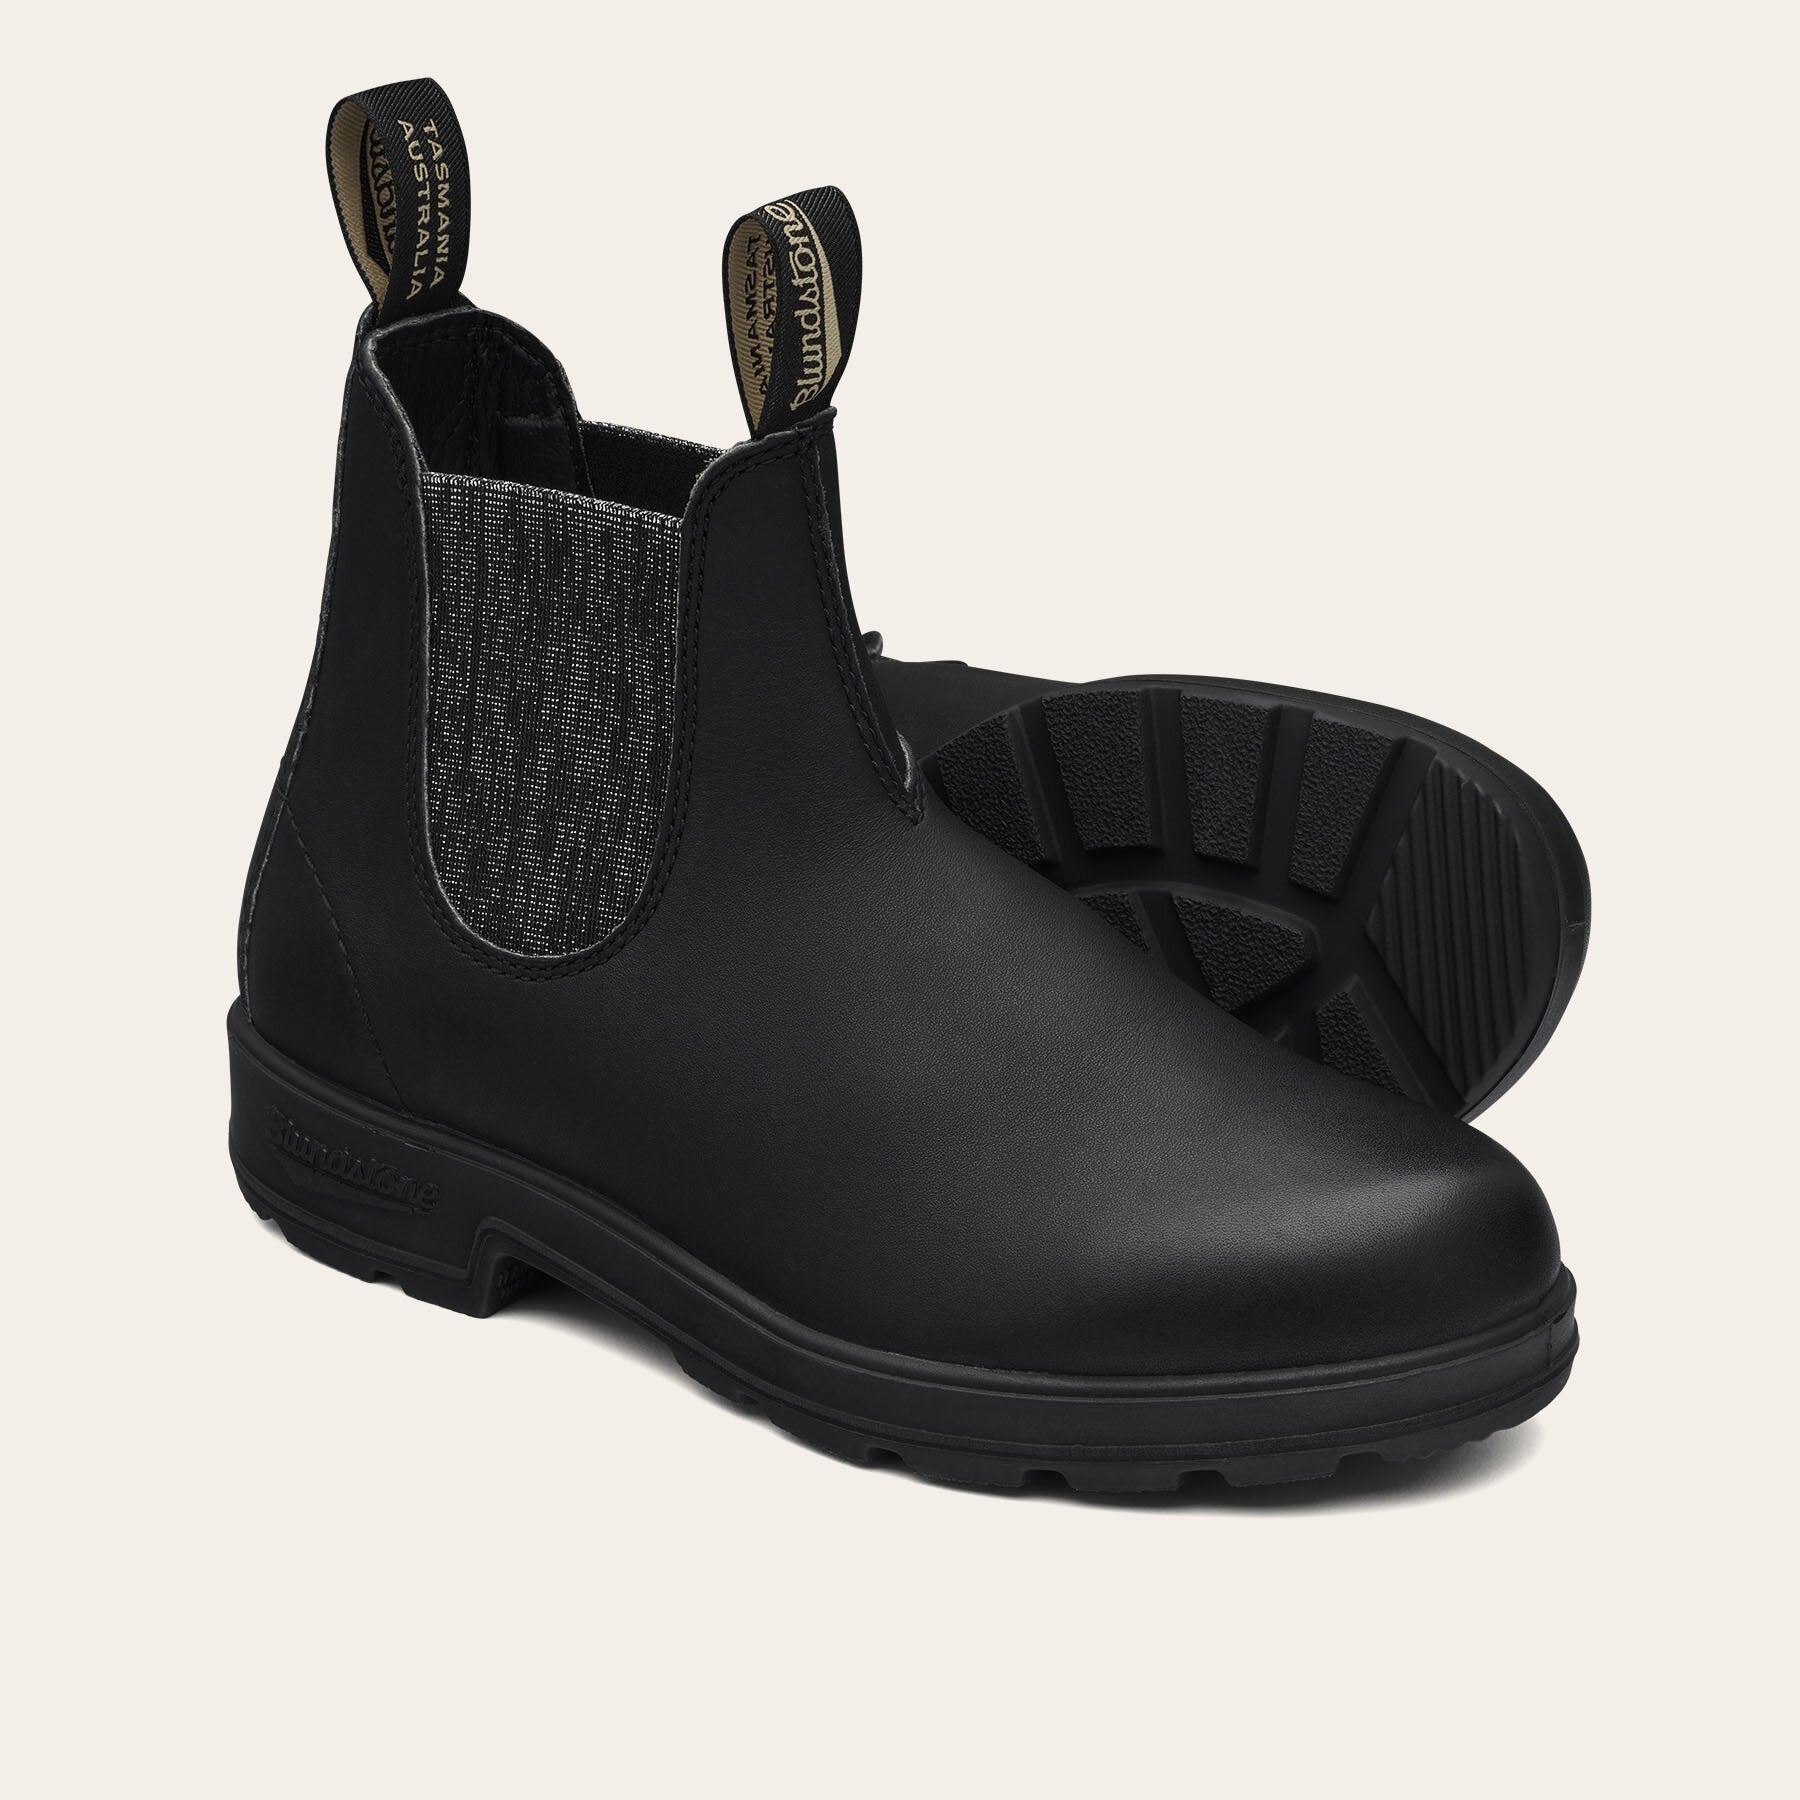 85% Codice Sconto 2032 ORIGINALS BLACK & SILVER GLITTER blundstone scarpe